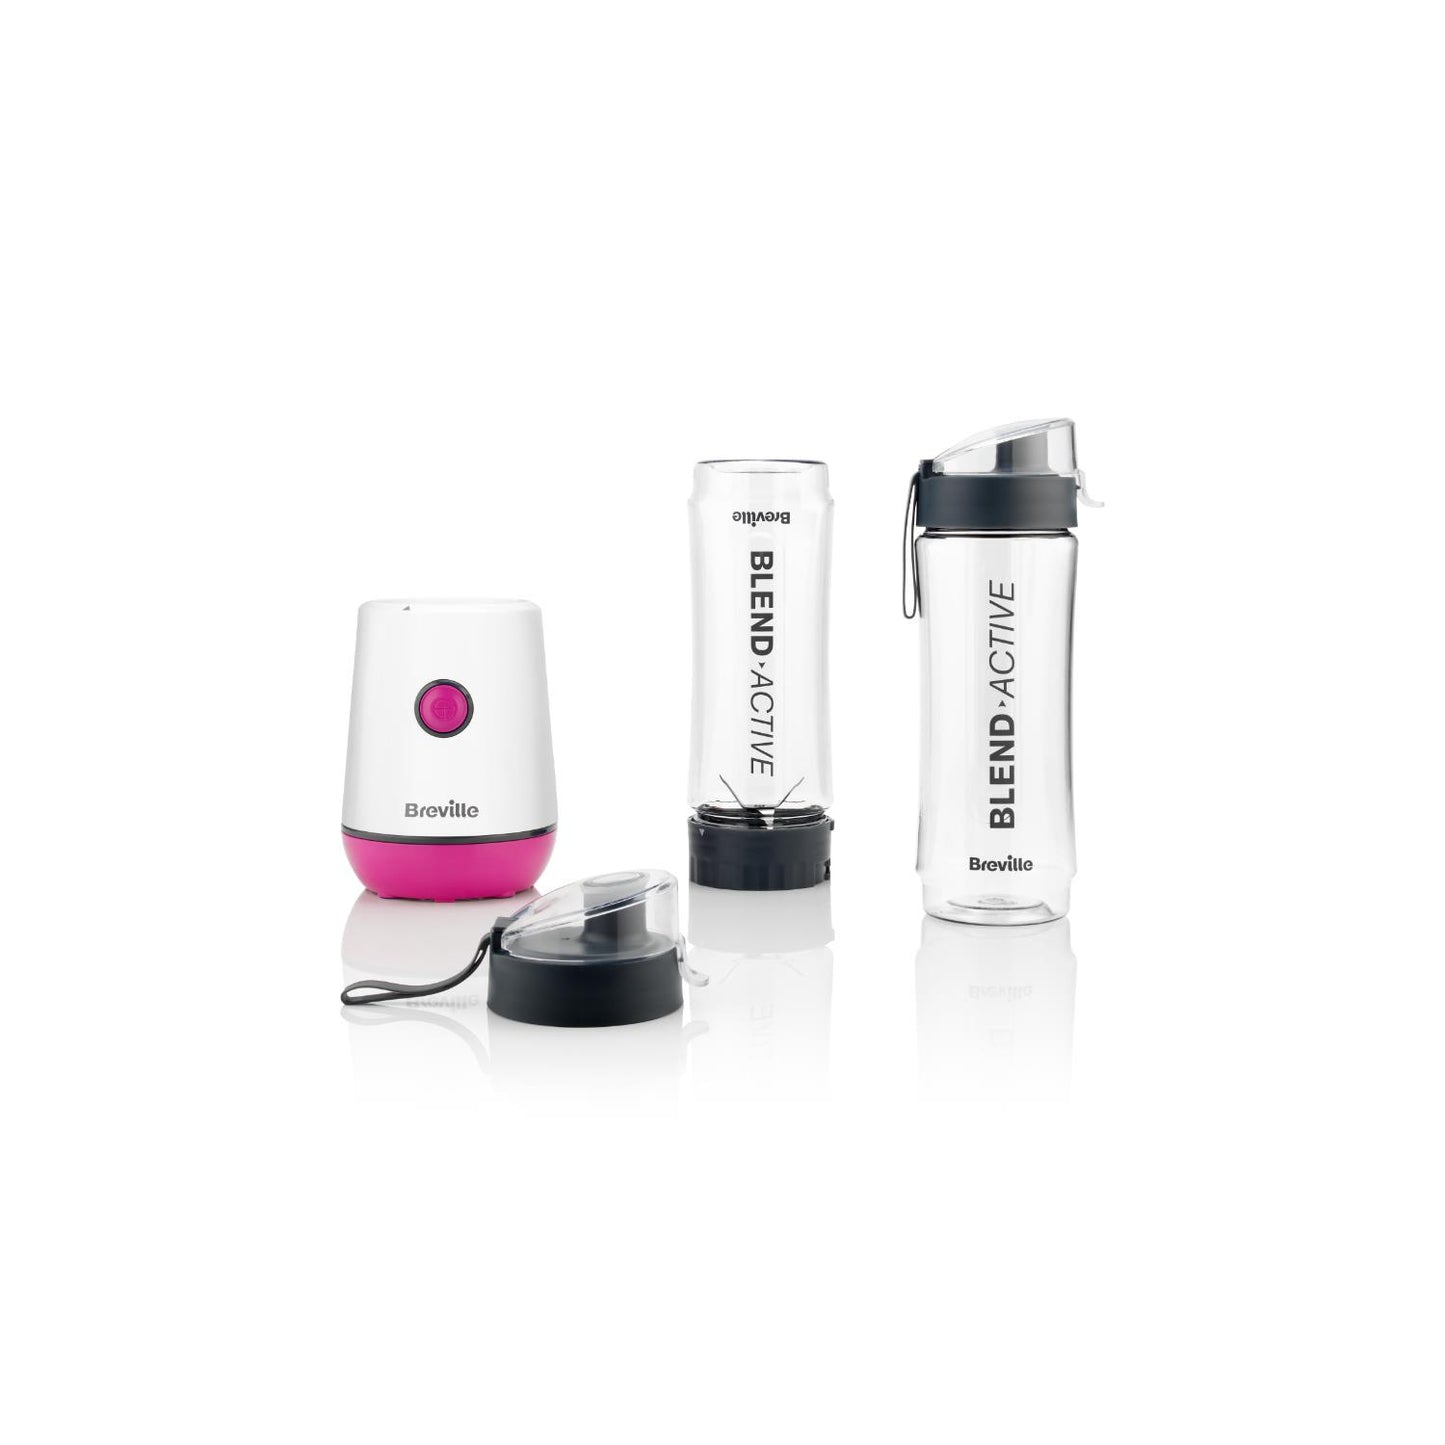 Breville Blend Active Pink Personal Blender & Smoothie Maker